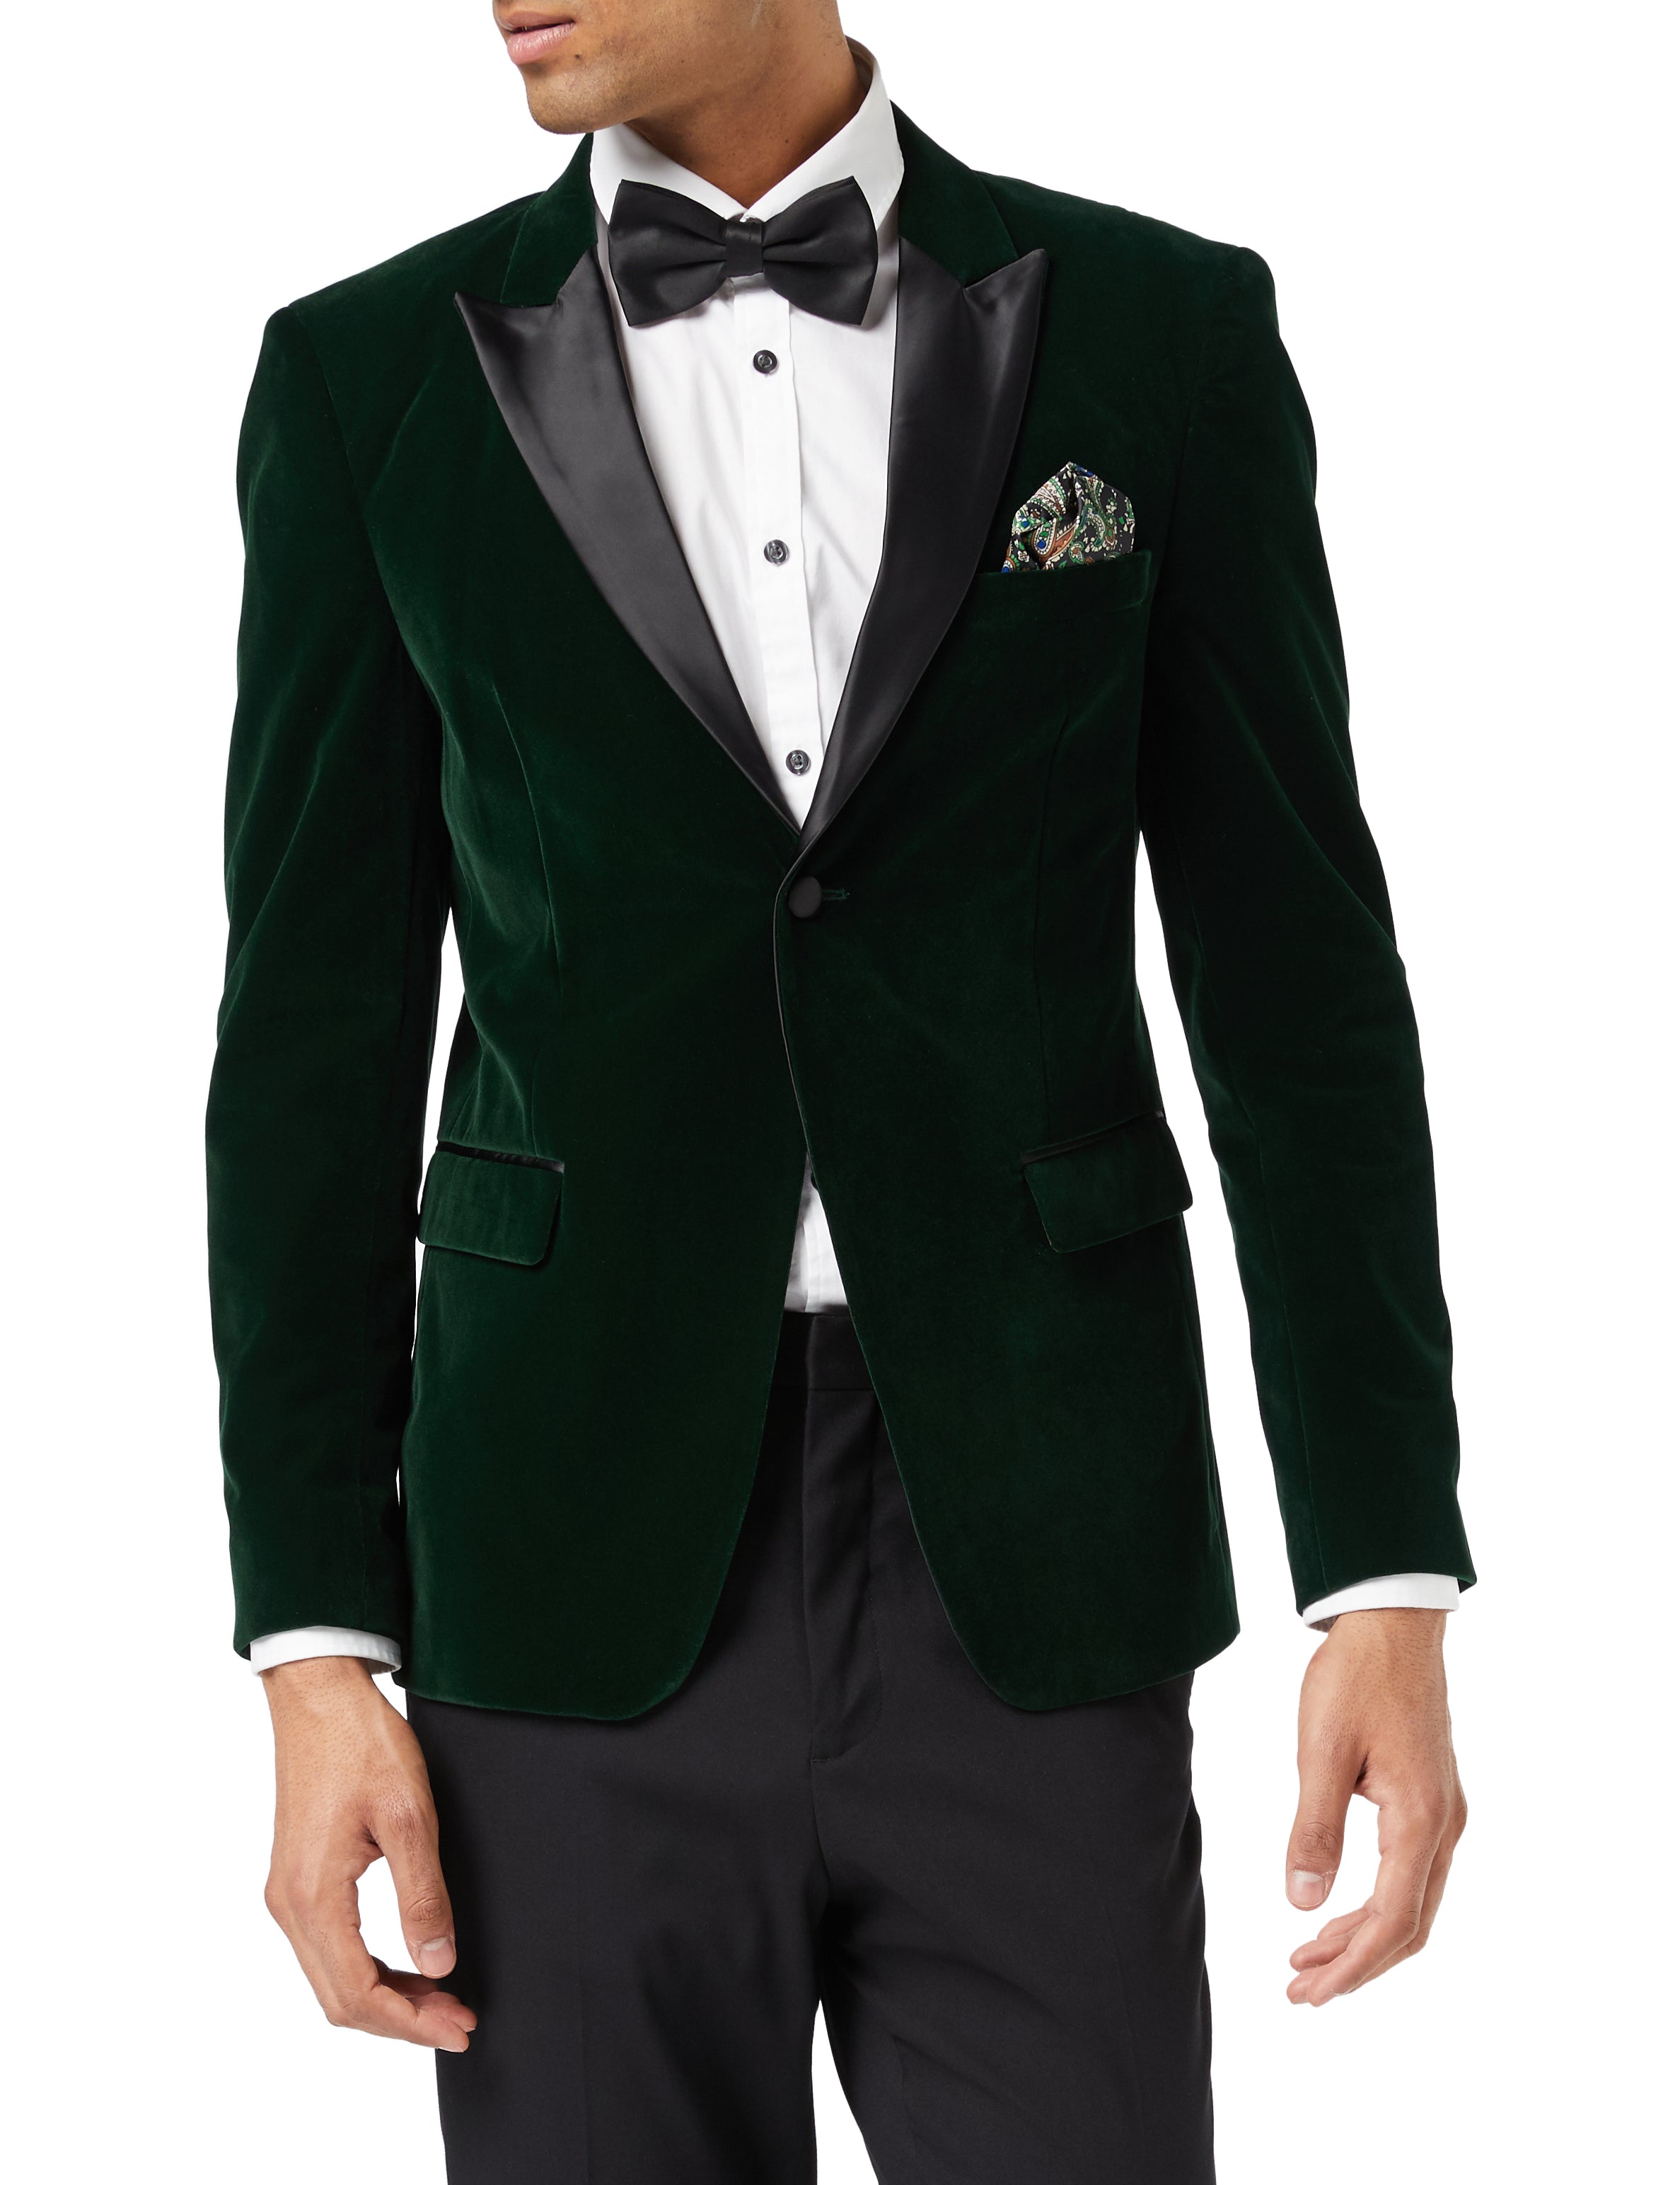 Mens Green velvet tuxedo dinner jacket